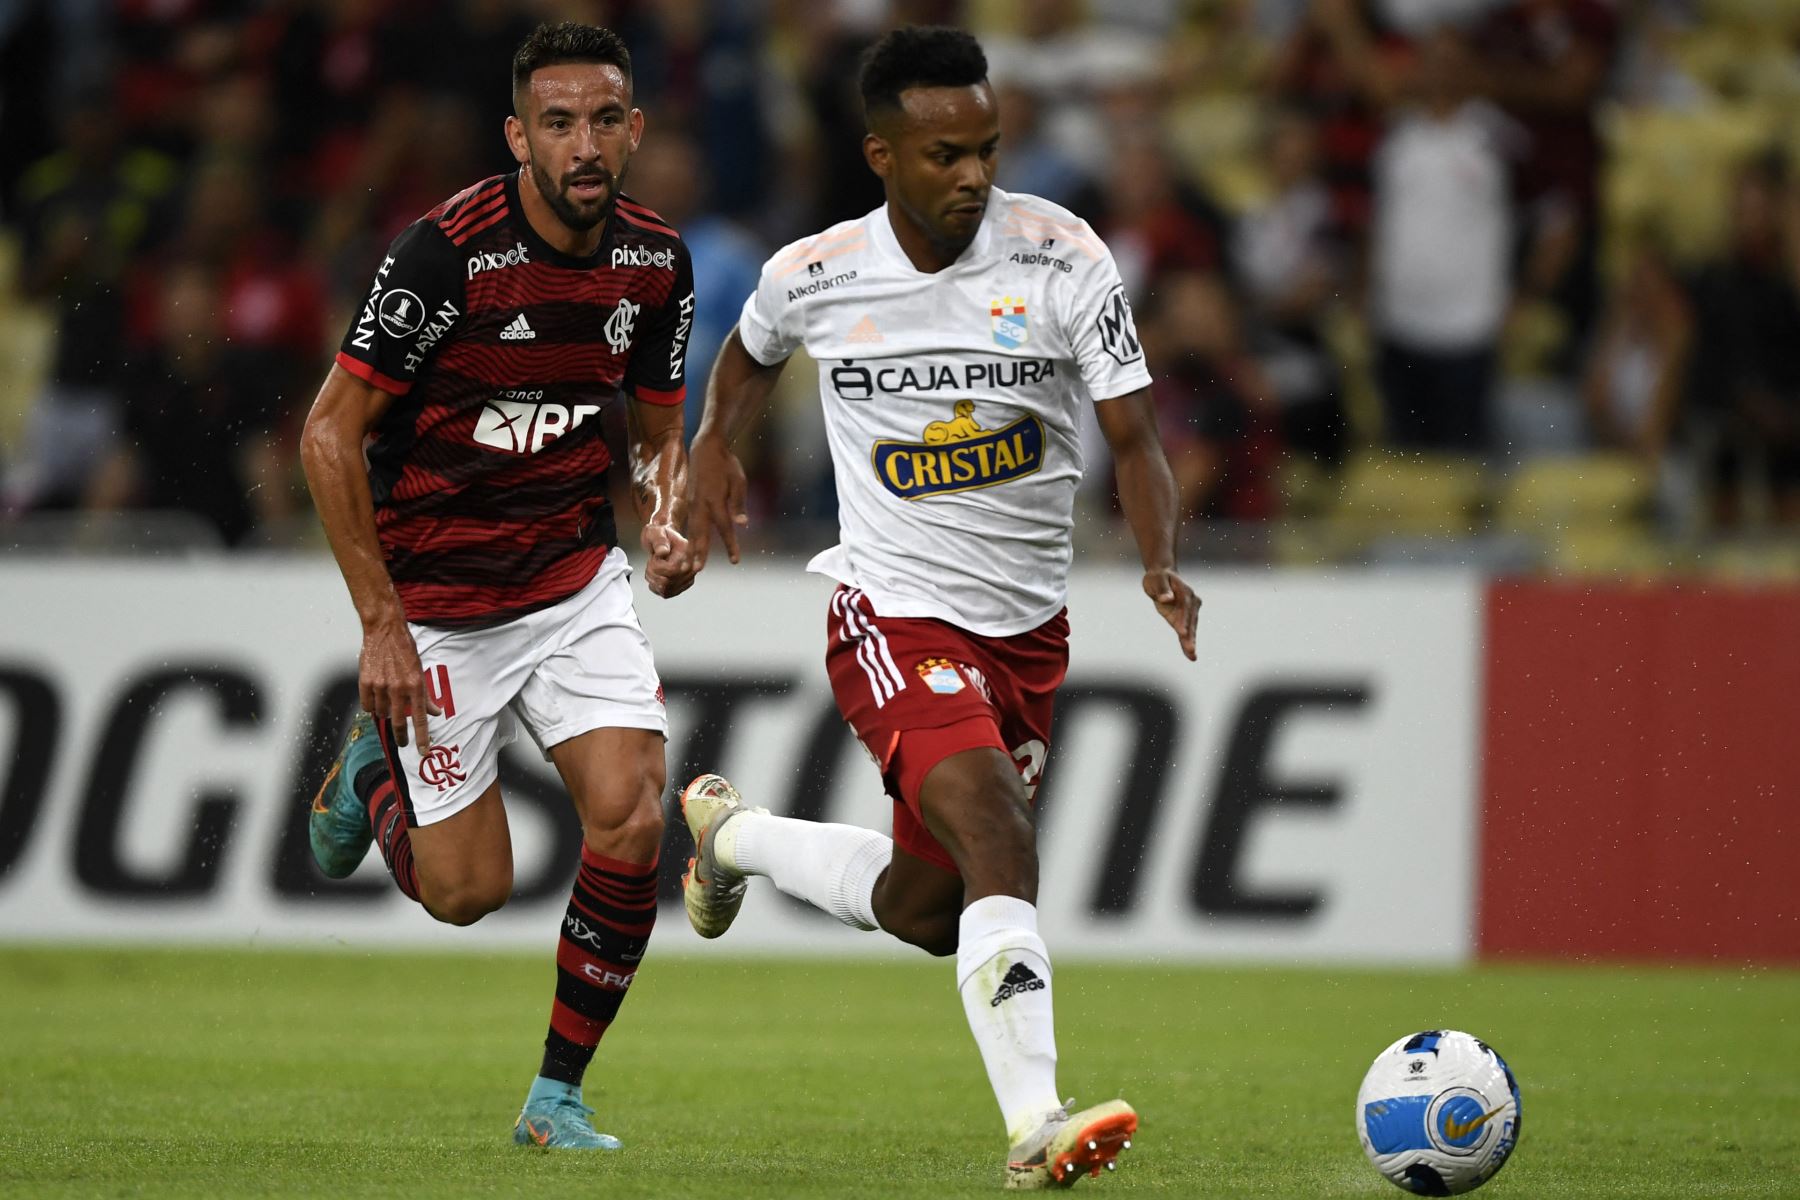 El chileno  del Flamengo Mauricio Isla (izquierda) y el jugador del Sporting Cristal Nilson Loyola (derecha) compiten por el balón  durante el partido de fútbol del día de hoy por la fase de grupos de la Copa Libertadores, en el estadio Maracaná de Río de Janeiro.
Foto: AFP